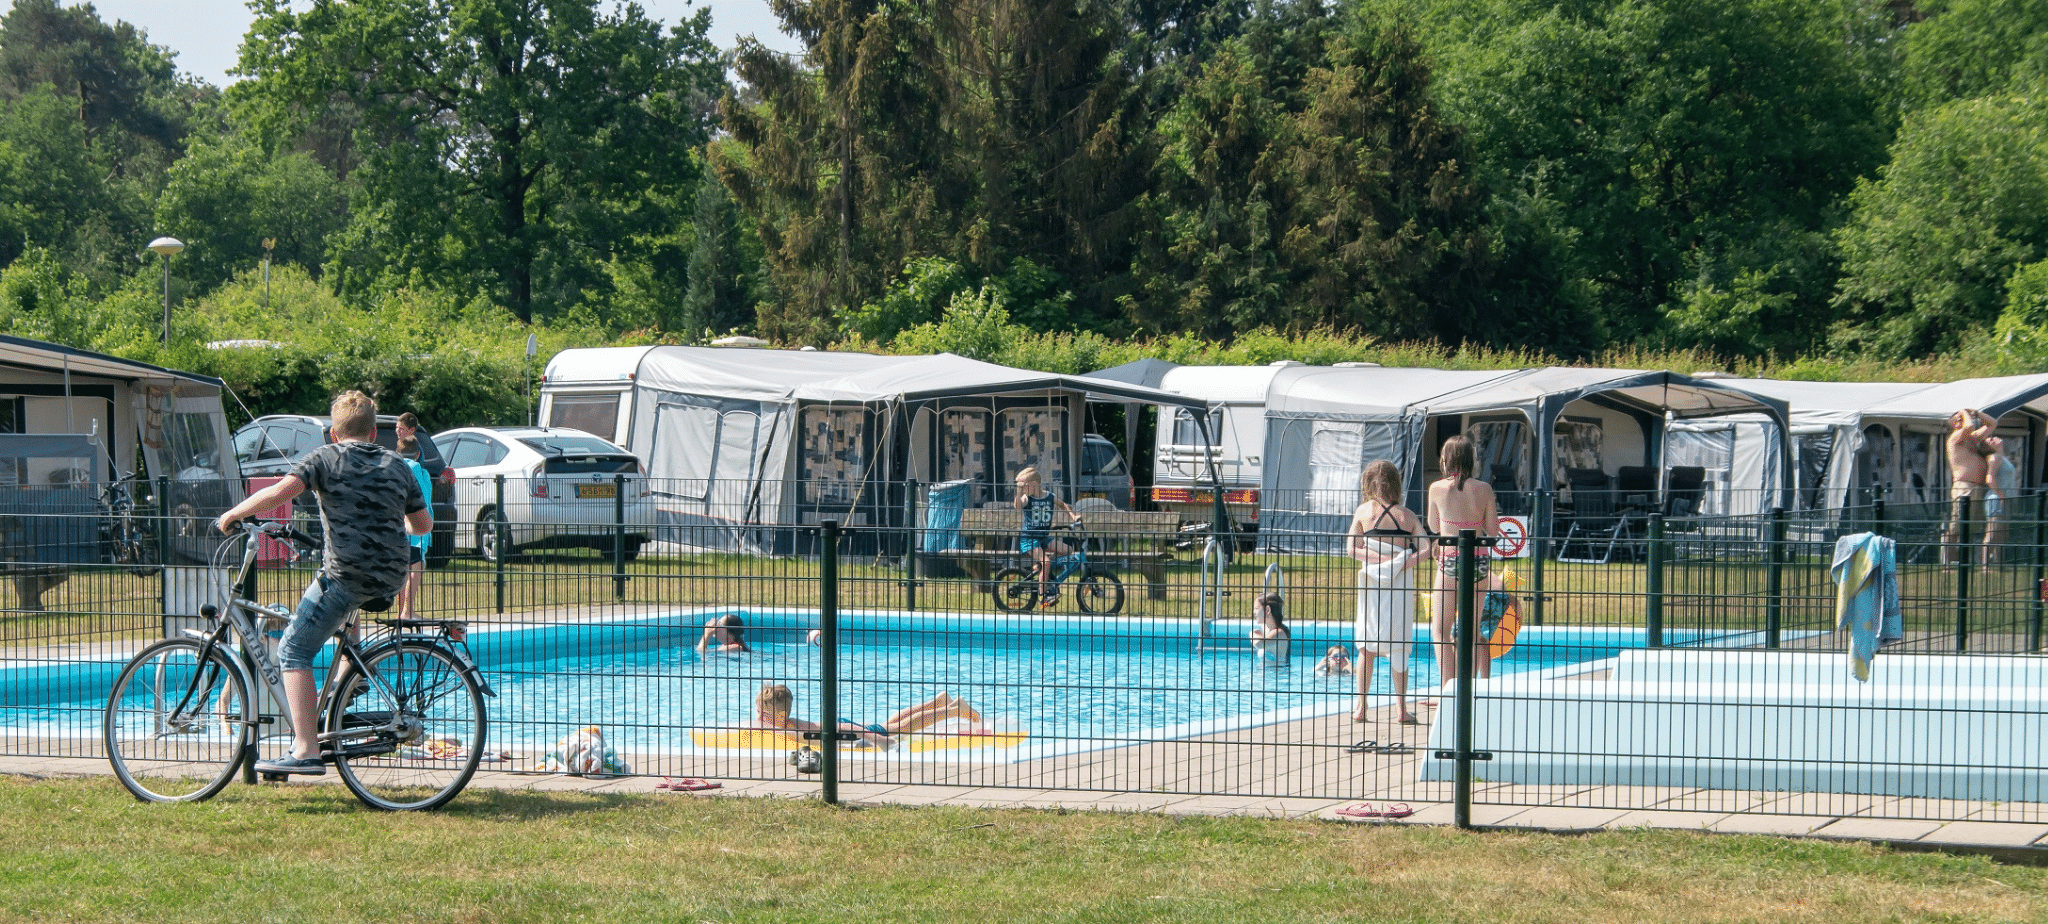 Camping Zutphen met zwembad